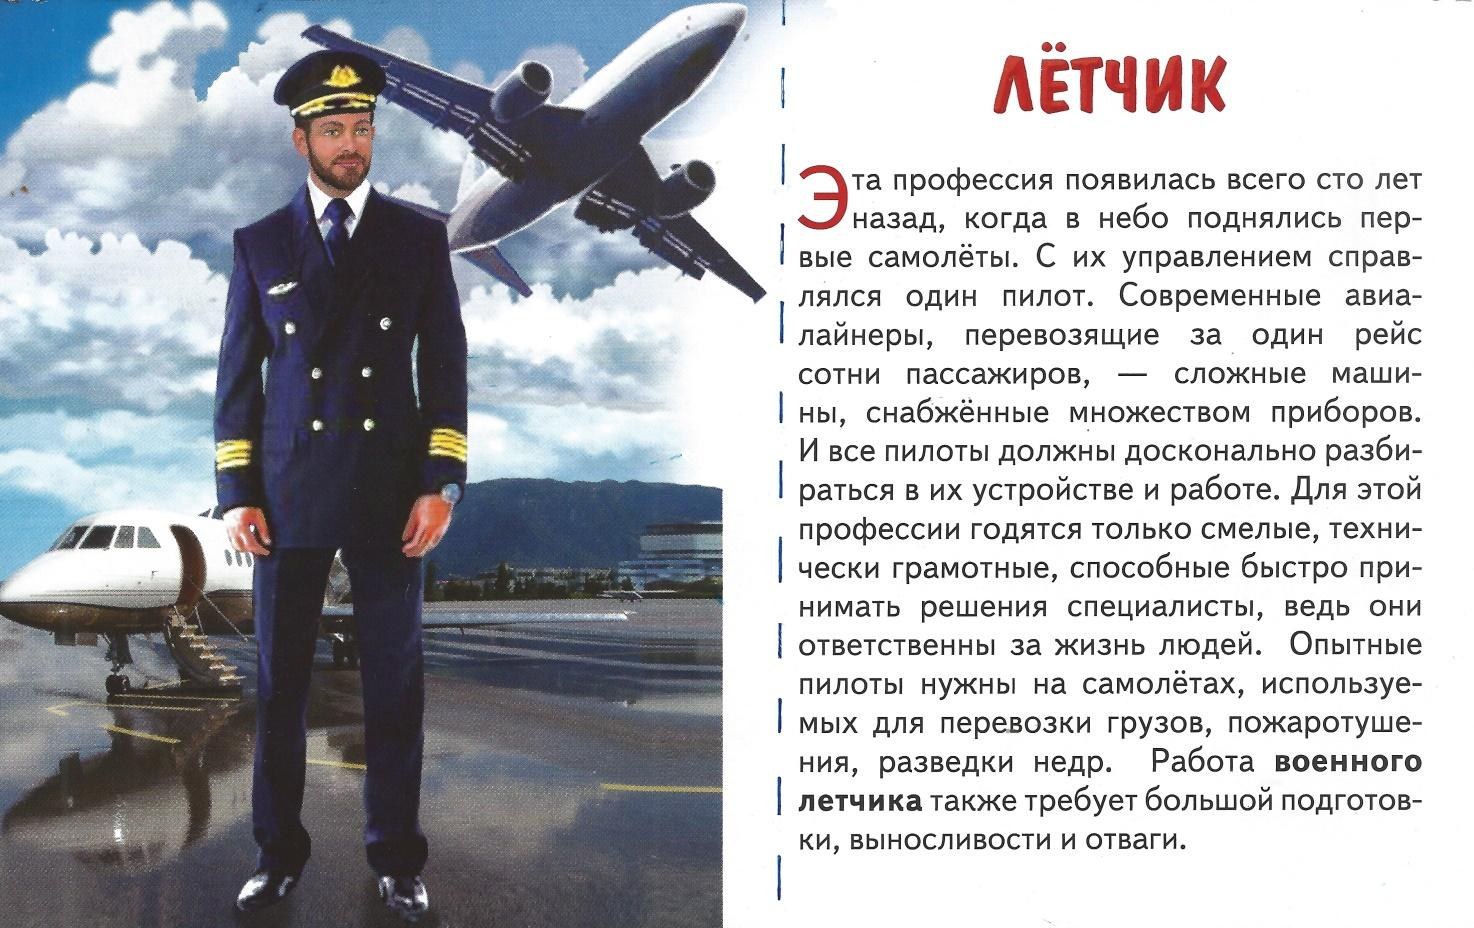 Карточки профессии на транспорте Капитан. Текст про летчиков